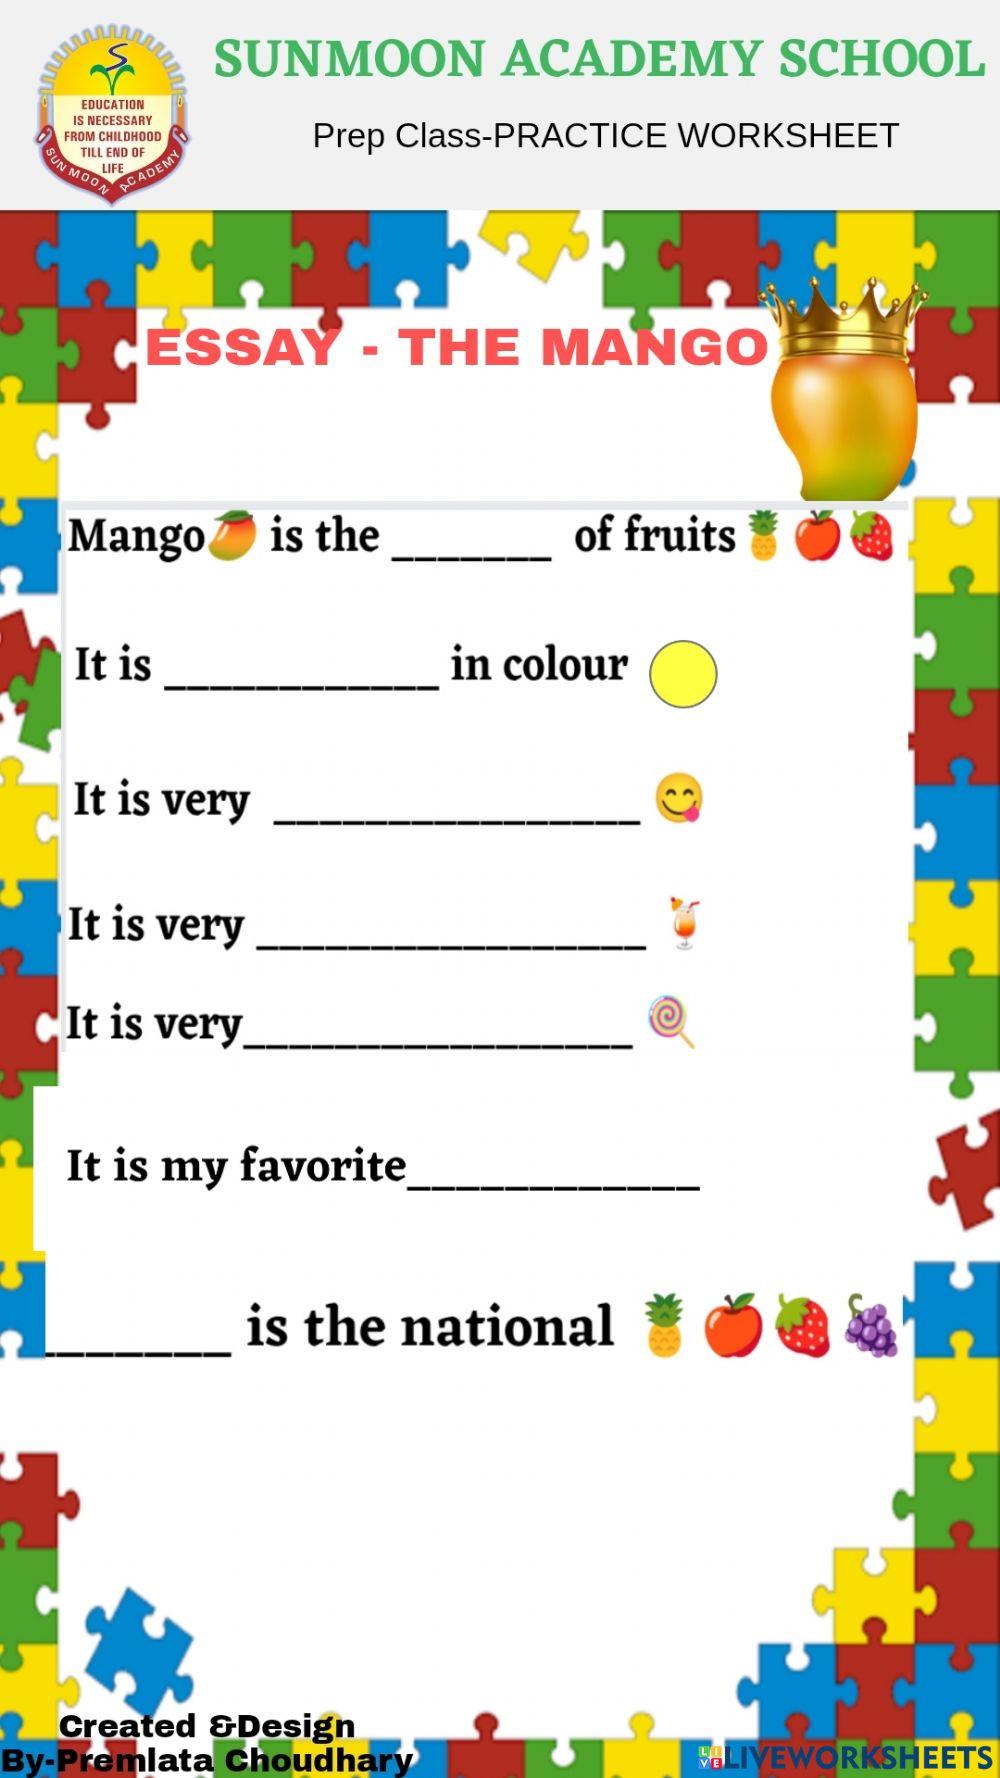 The mango